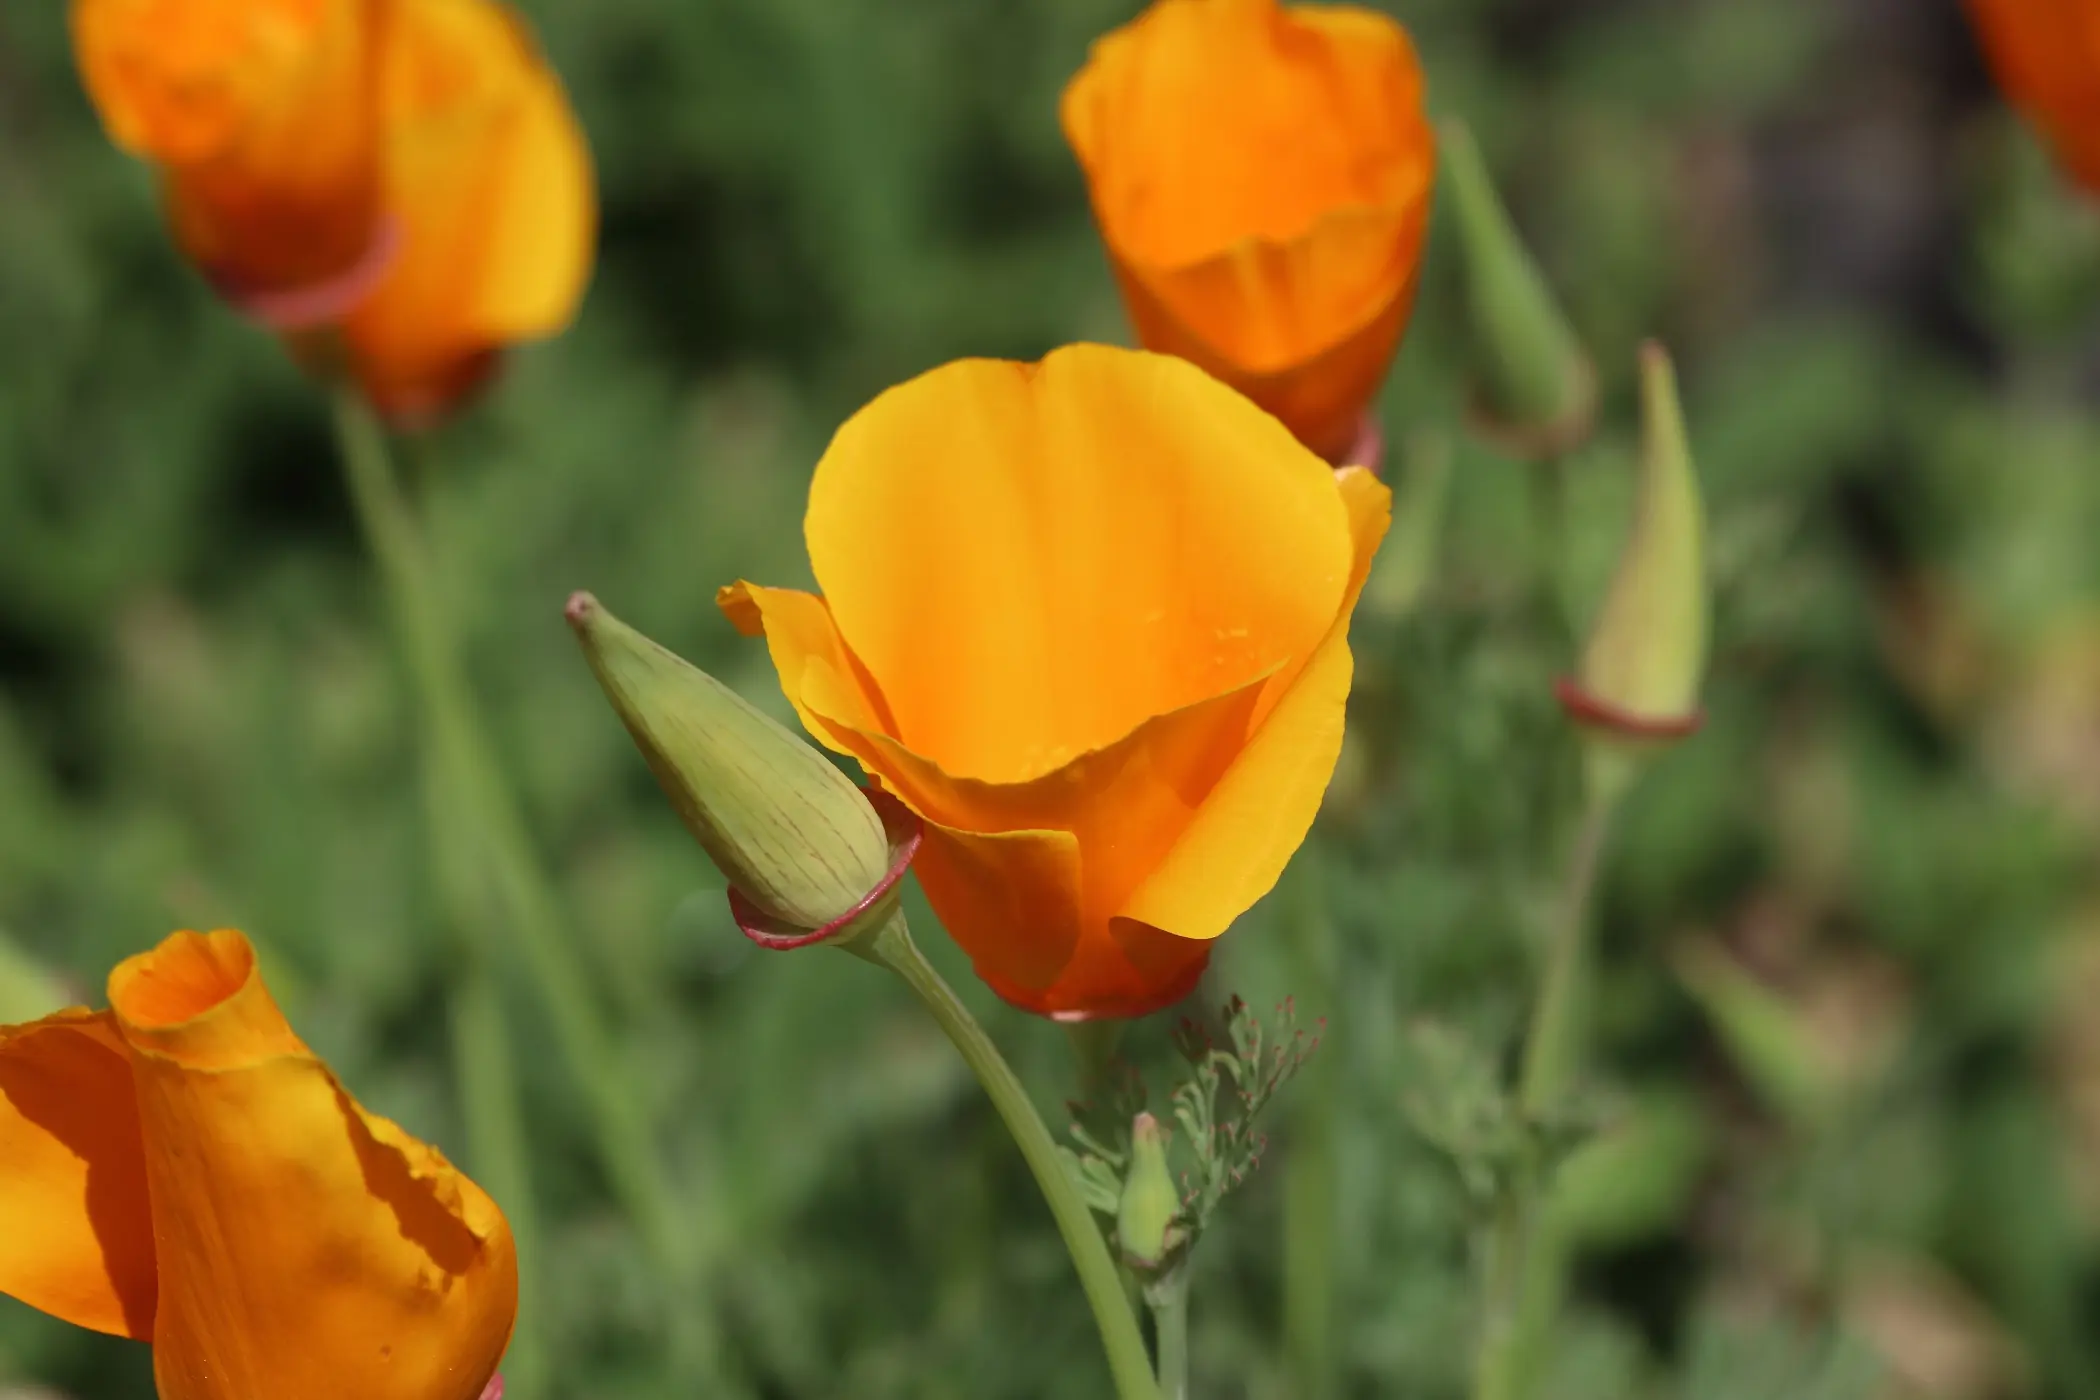 Kalifornischer Mohn - Detailaufnahme der orangenen Blüte